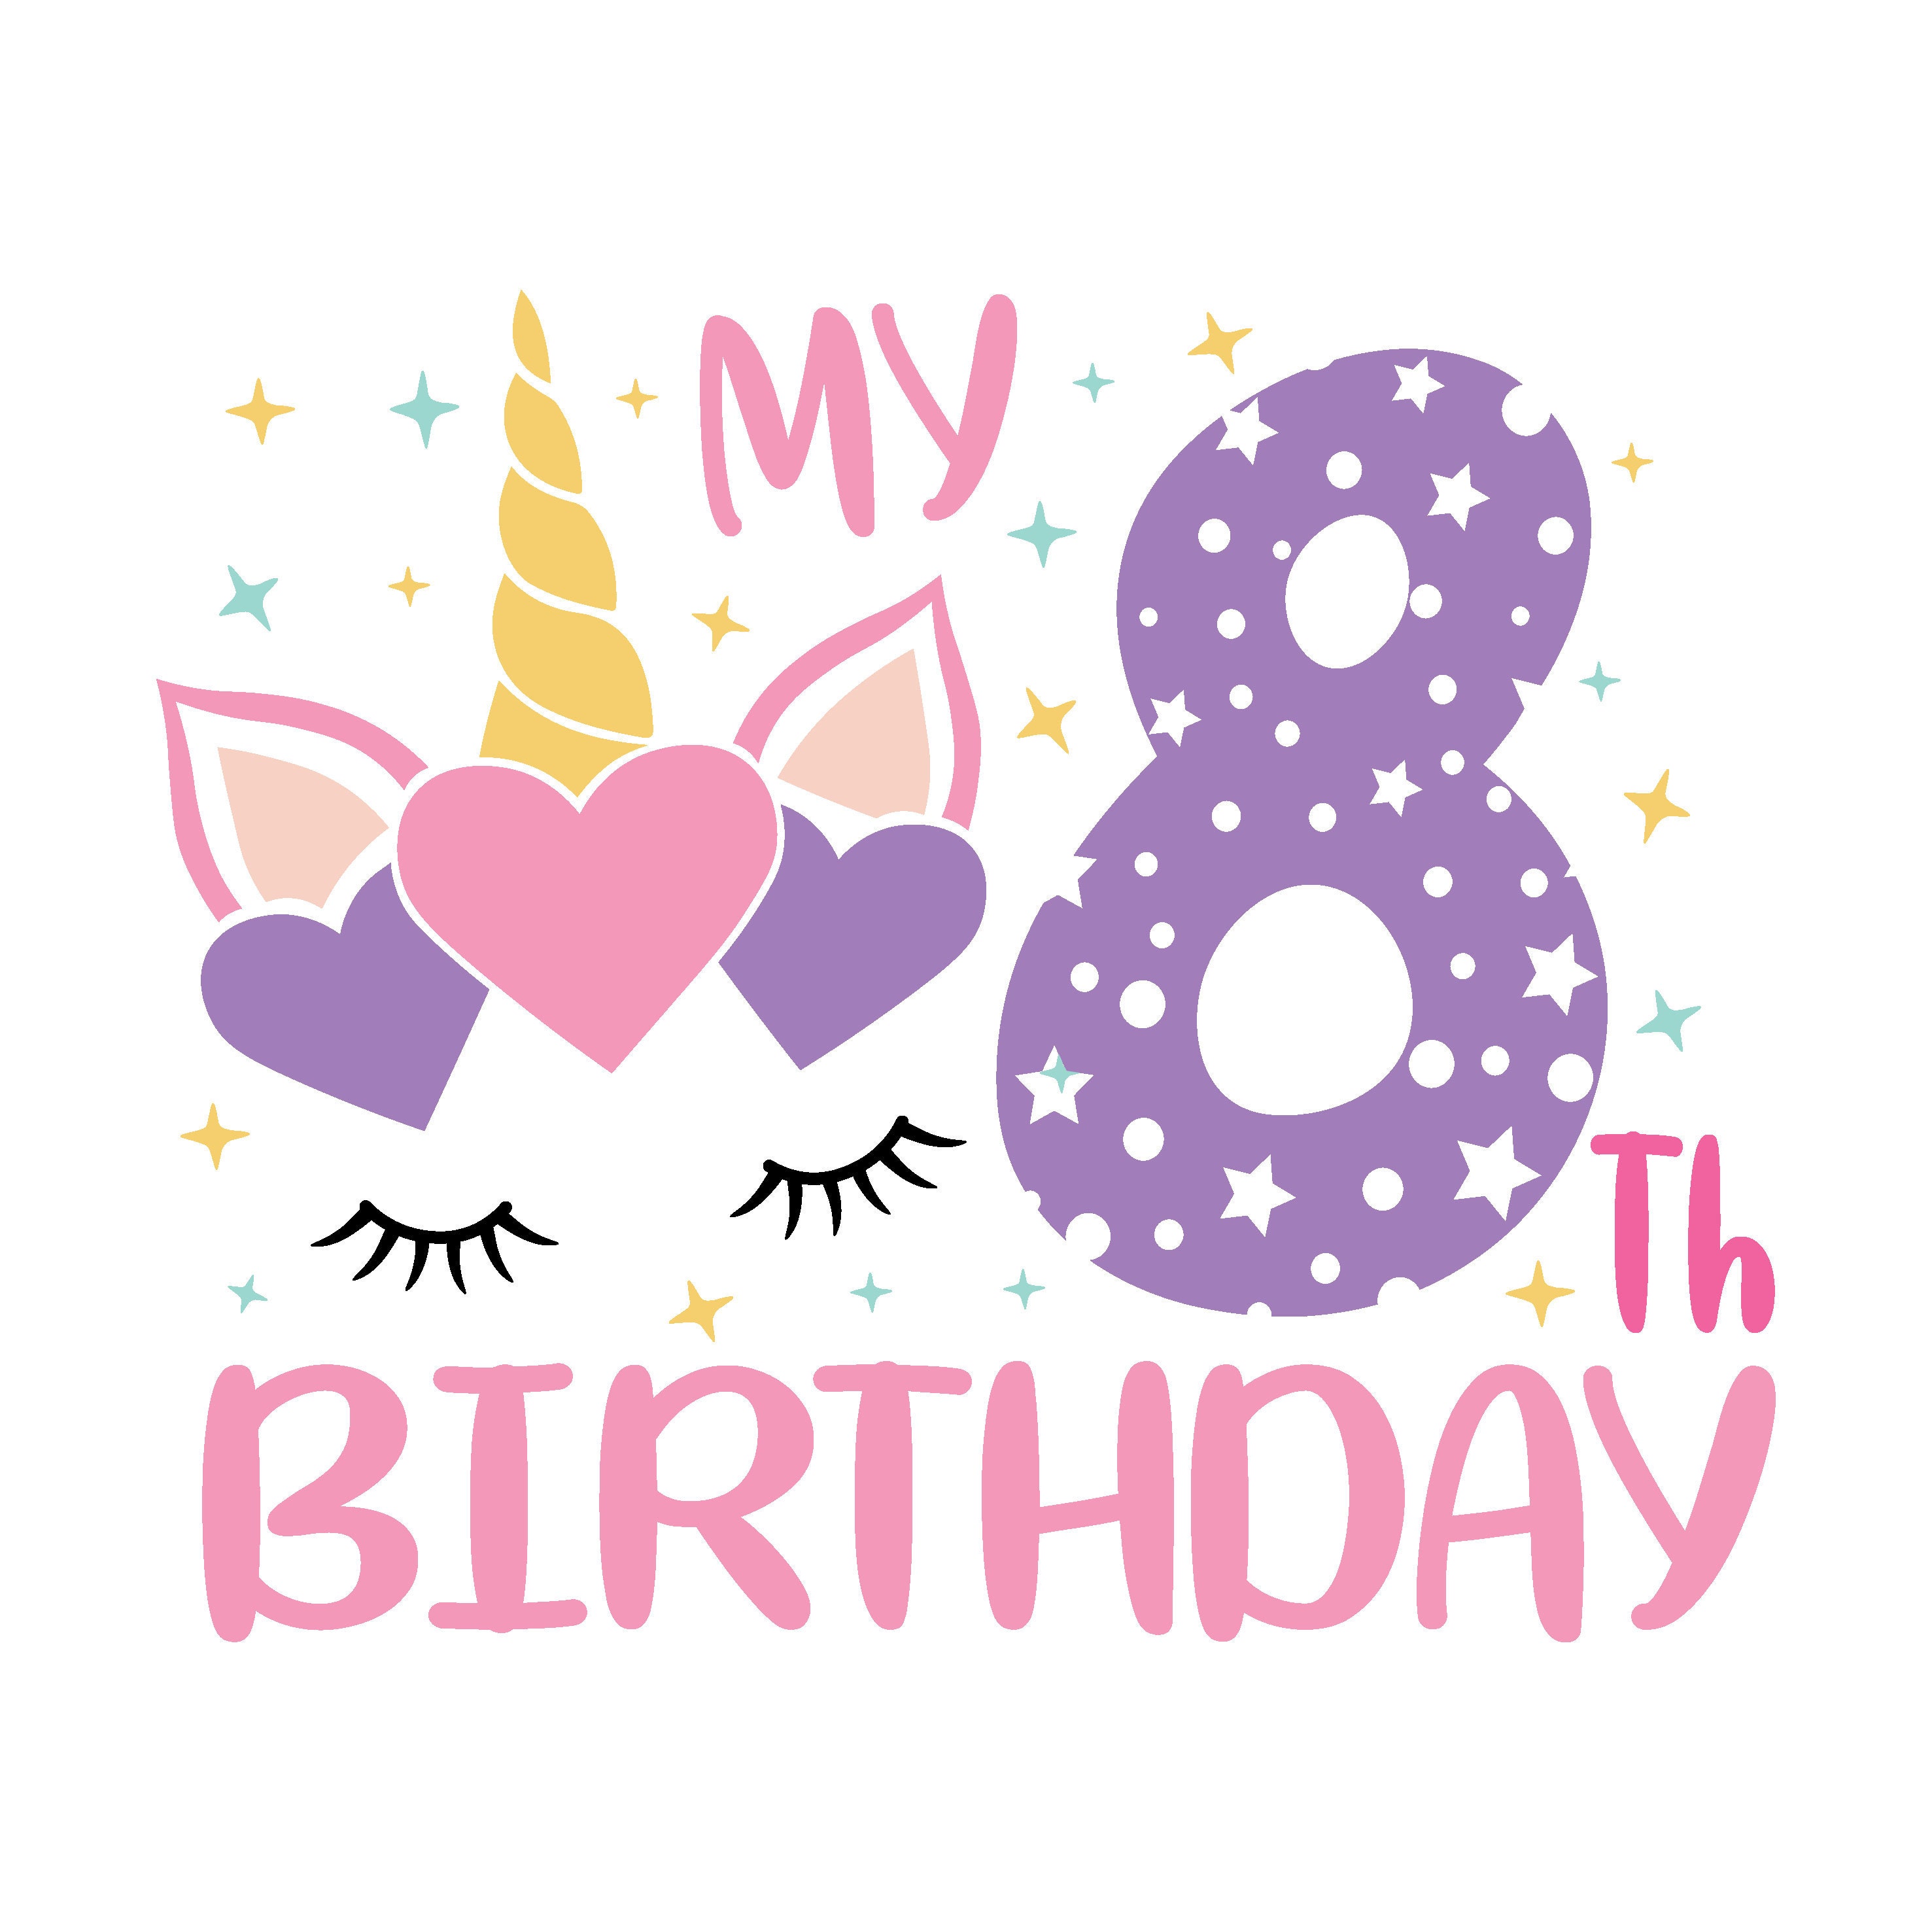 8th Birthday SVG